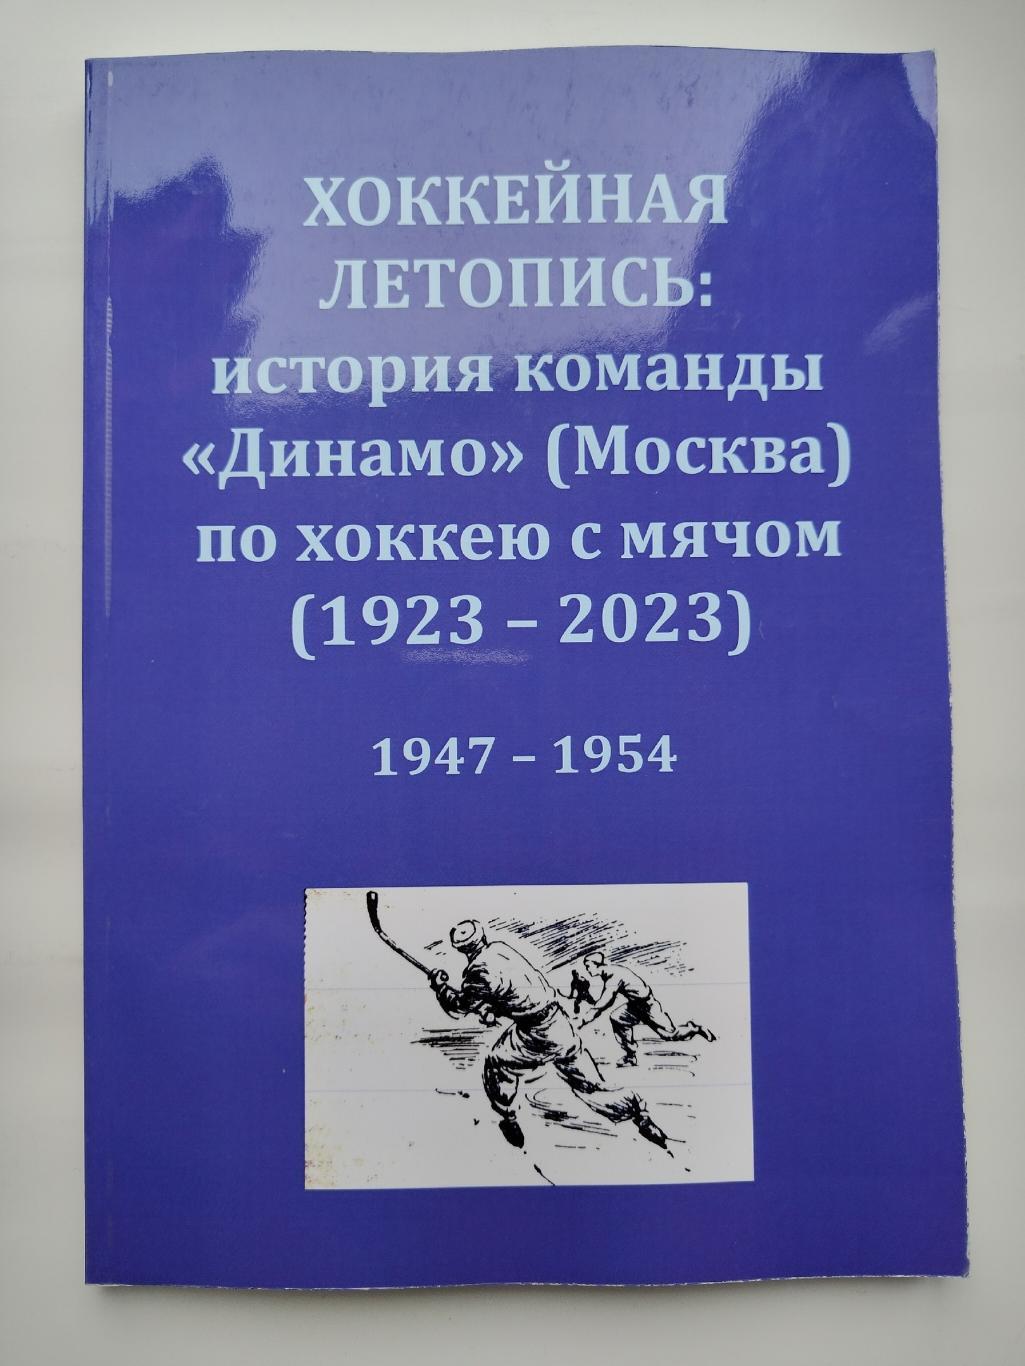 Хоккей с мячом. Хоккейная летопись: история команды Динамо Москва 1947-1954